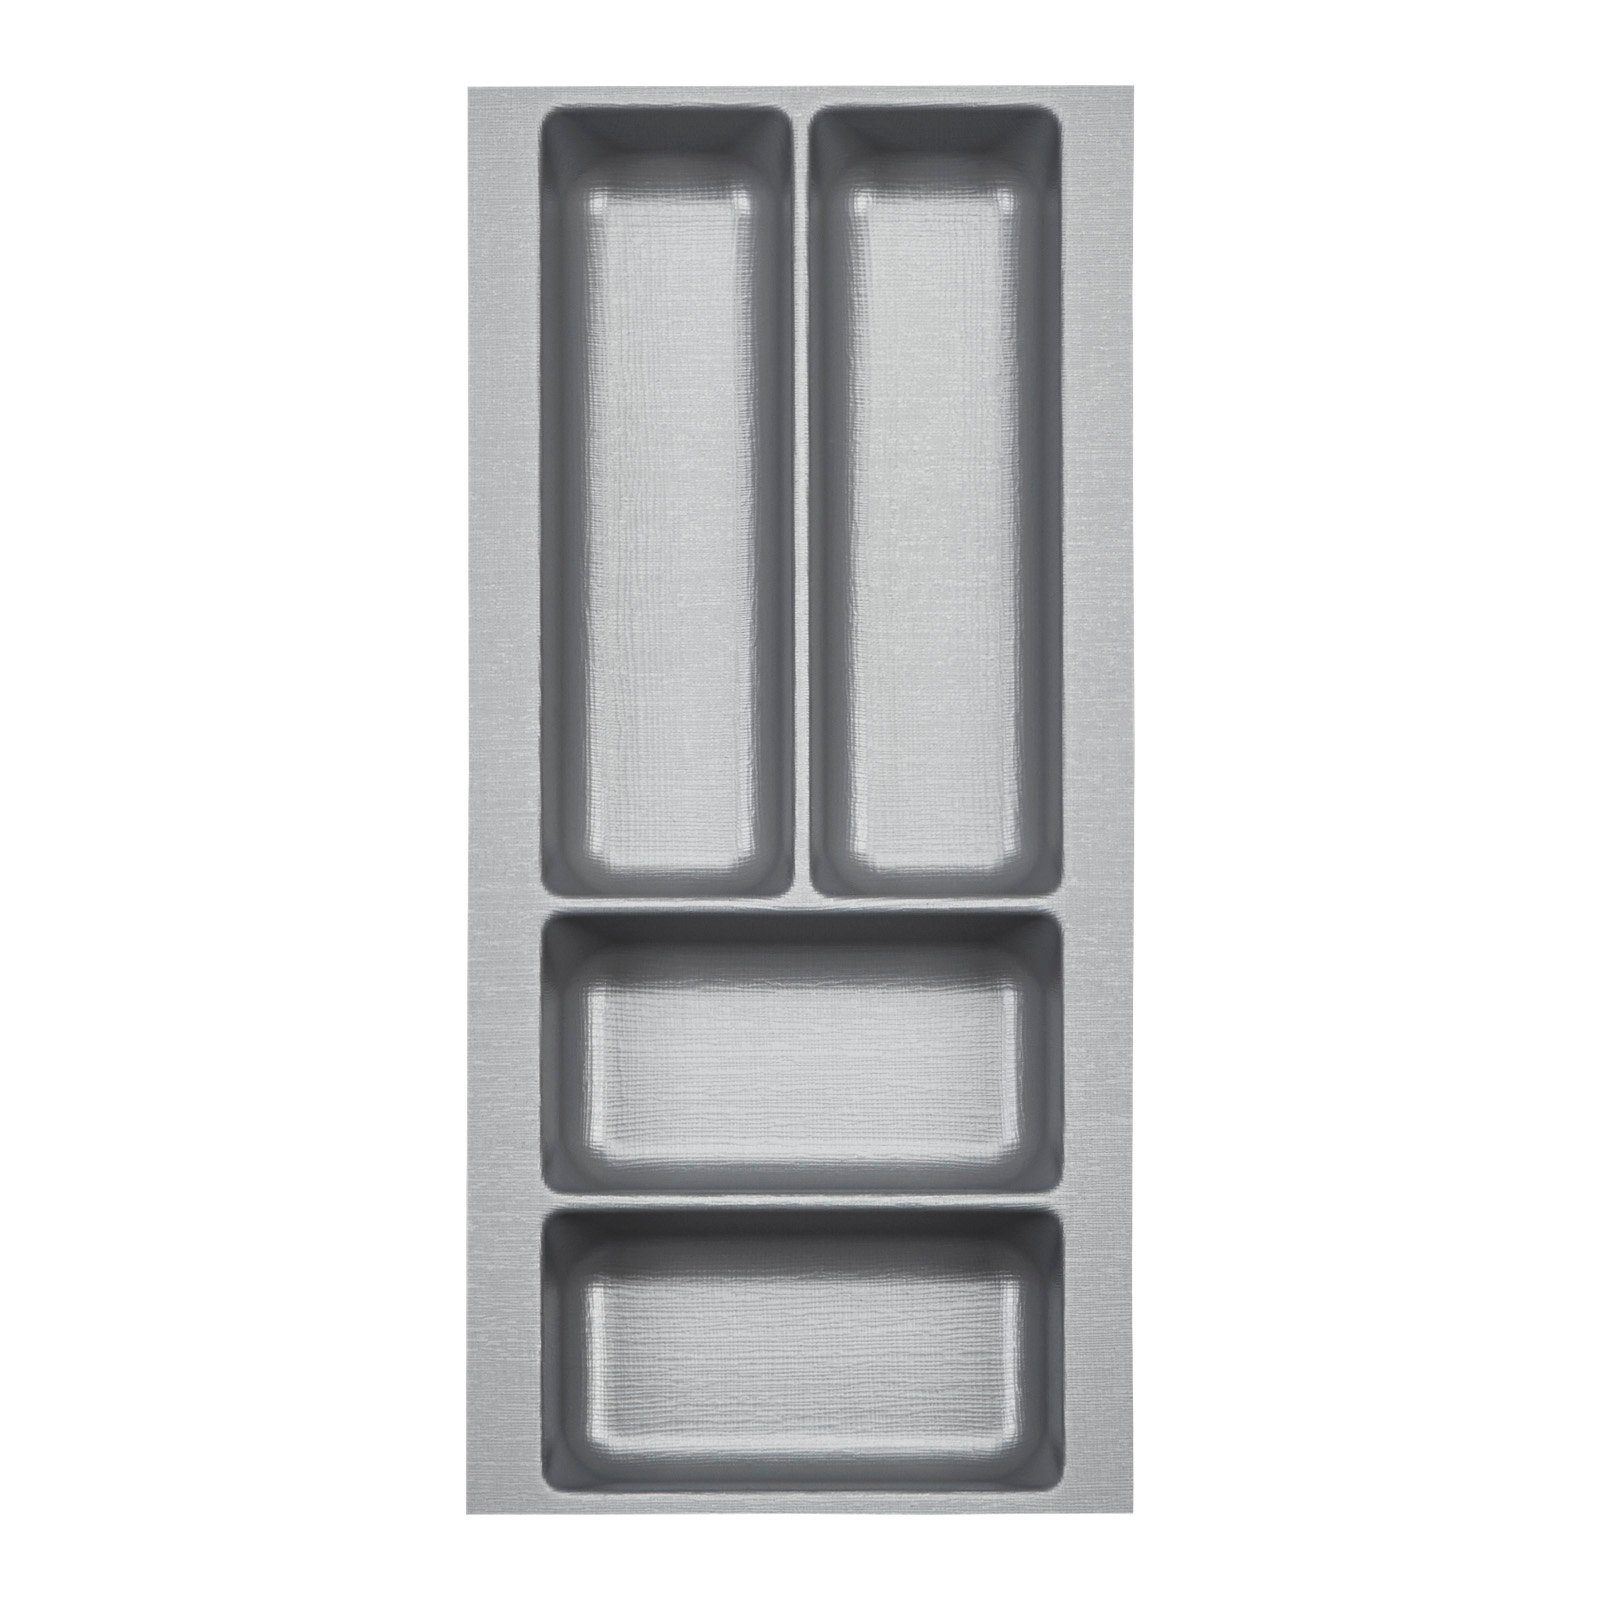 SO-TECH® Besteckeinsatz Orga-Box 2 silbergrau Canvas Leinwand Struktur für Nobilia, Besteckeinsatz 209 mm Breite, Silbergrau